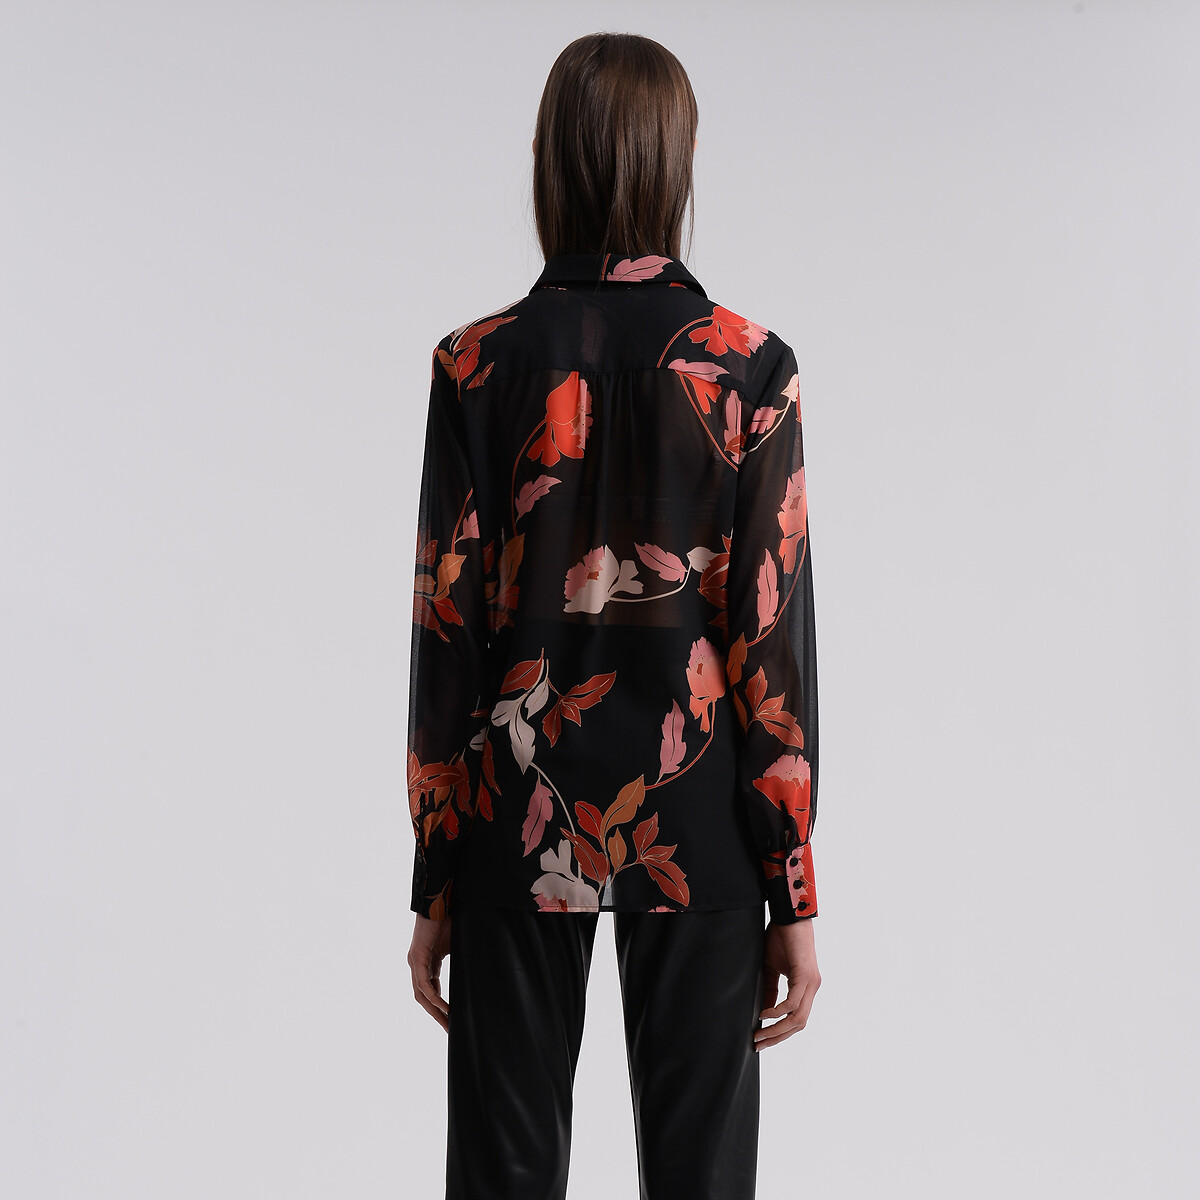 Блузка MOLLY BRACKEN Блузка Струящаяся прозрачная с цветочным принтом XL черный, размер XL - фото 3